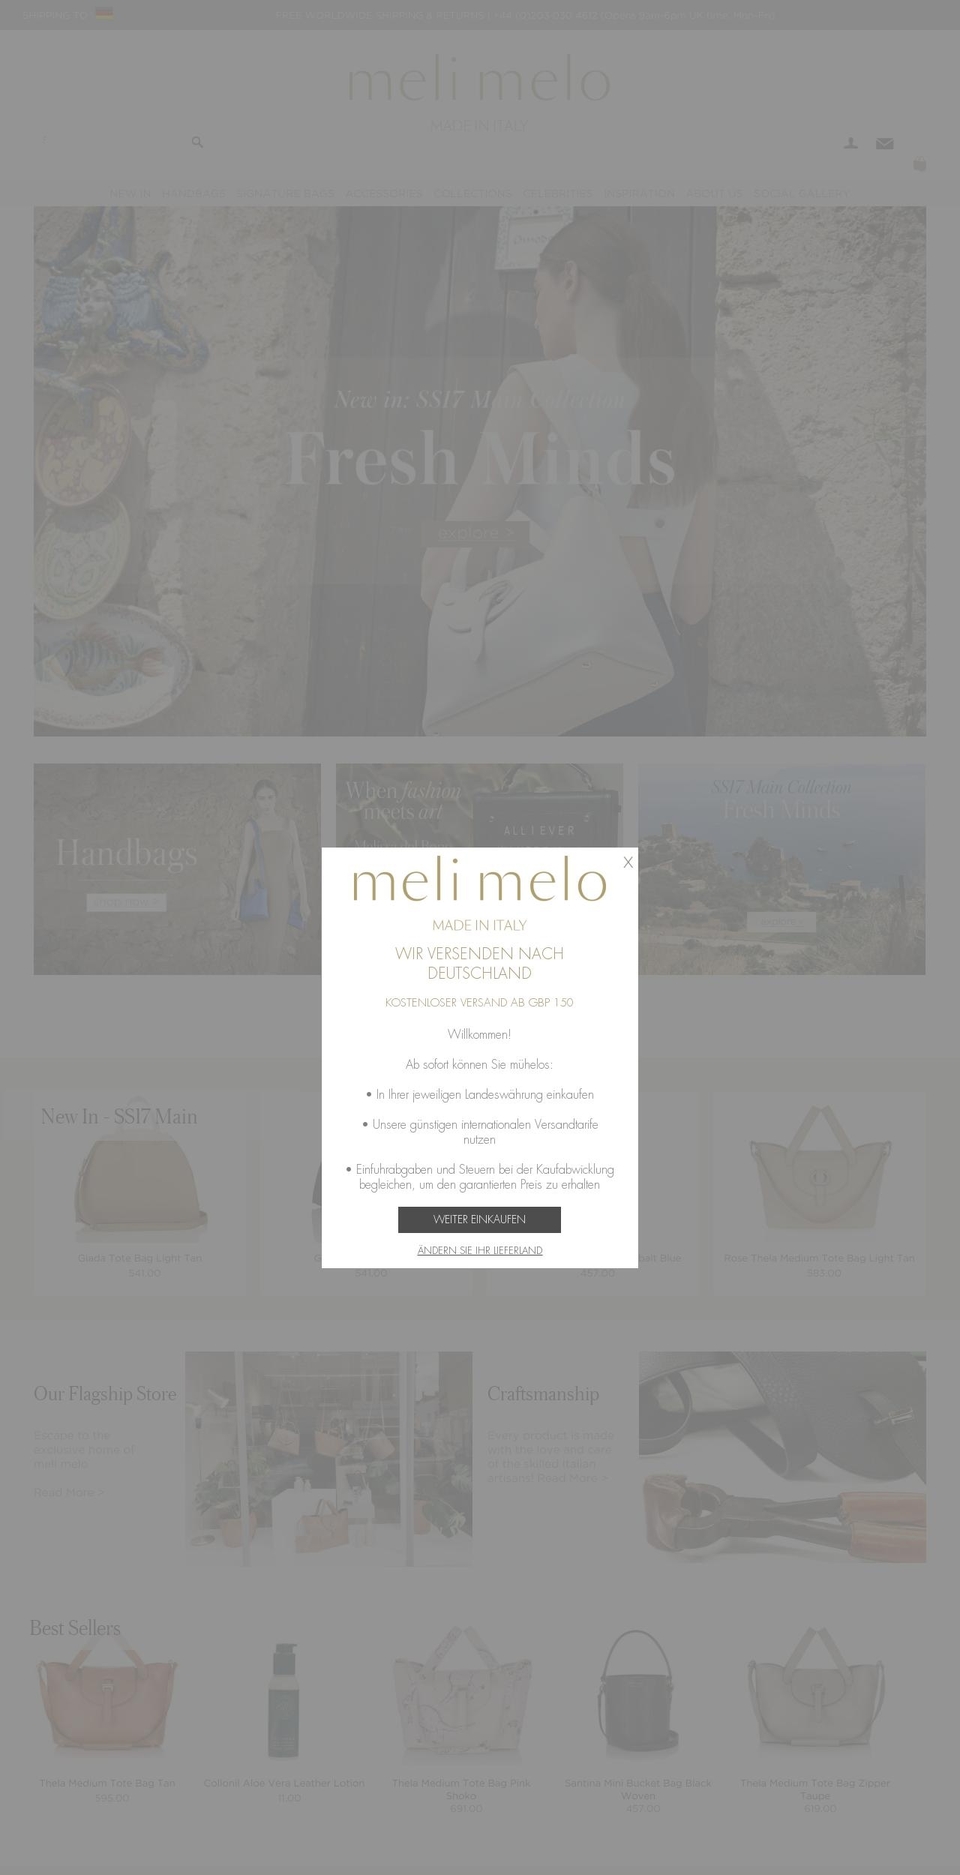 melimelo.com shopify website screenshot